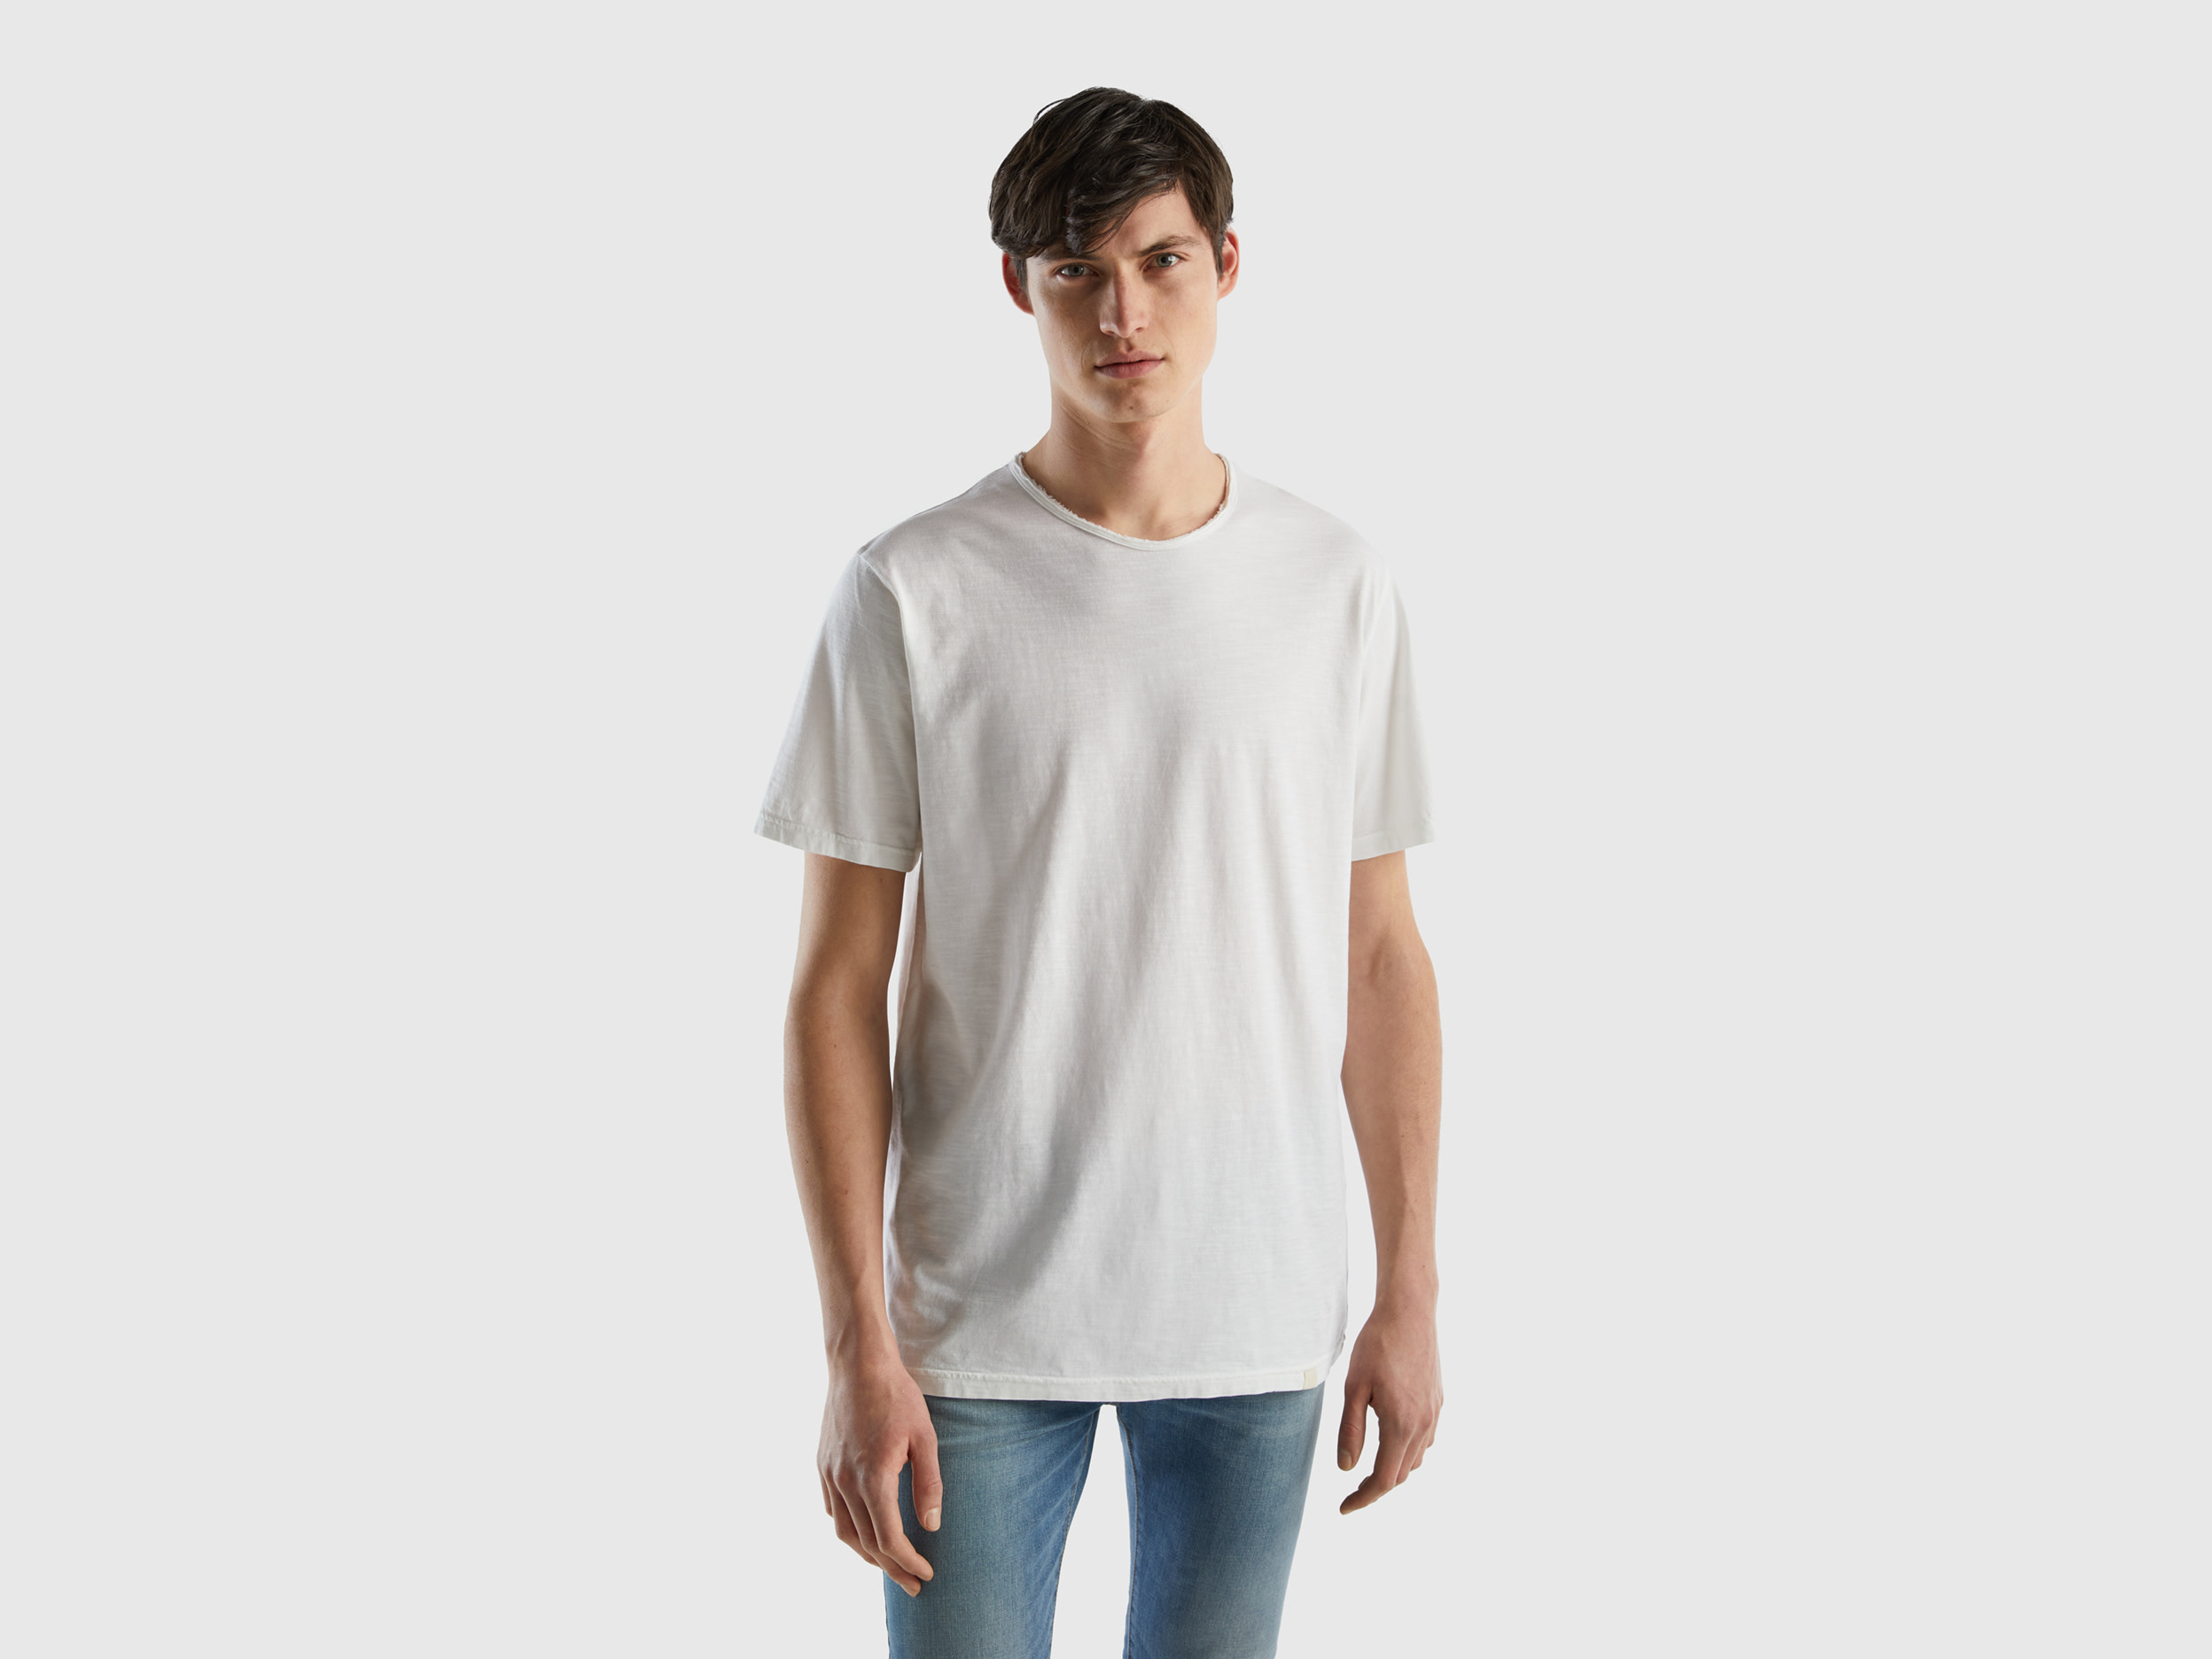 Benetton, White T-shirt In Slub Cotton, size XL, White, Men